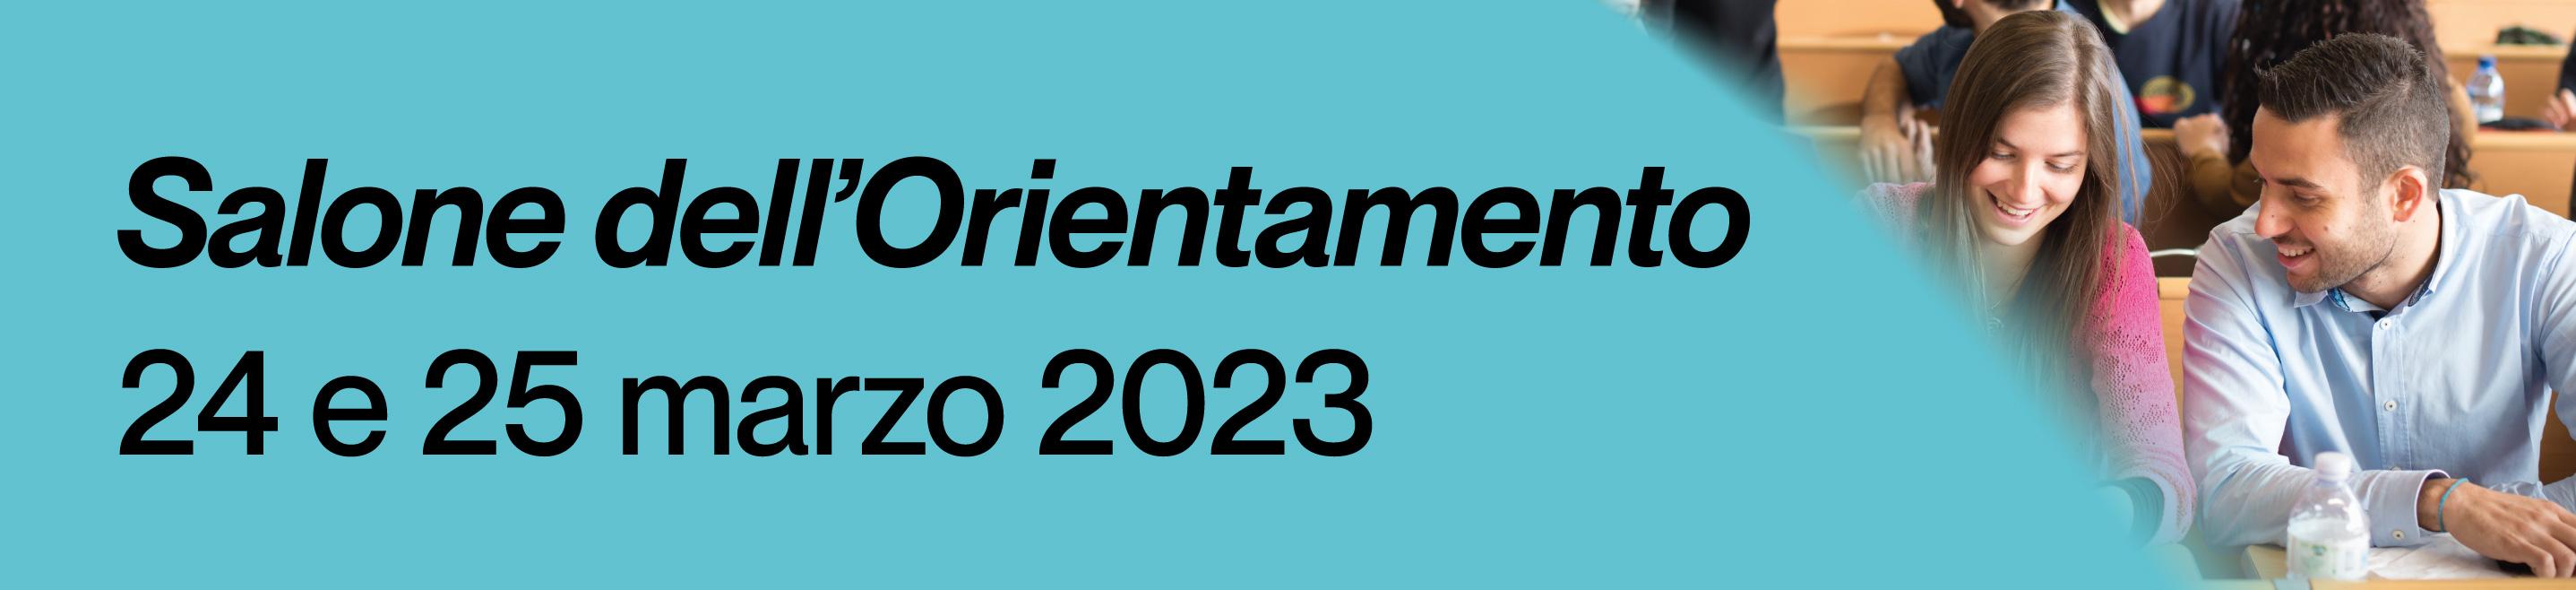 Banner Salone dell'orientamento 2023